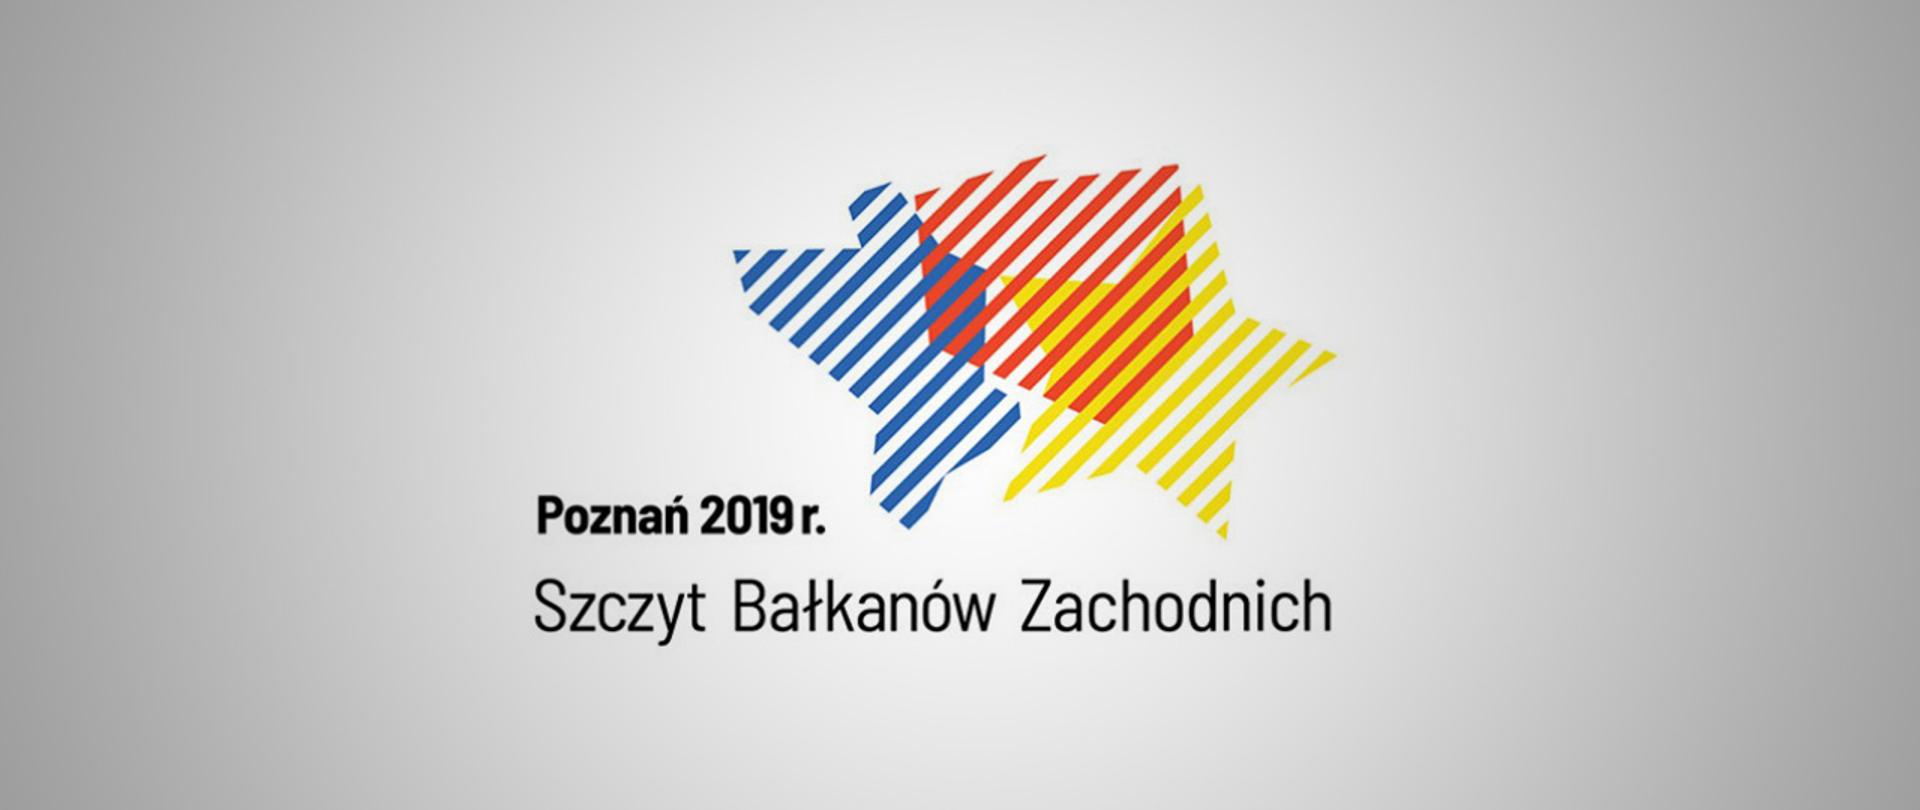 Szczyt Bałkanów Zachodnich w Poznaniu